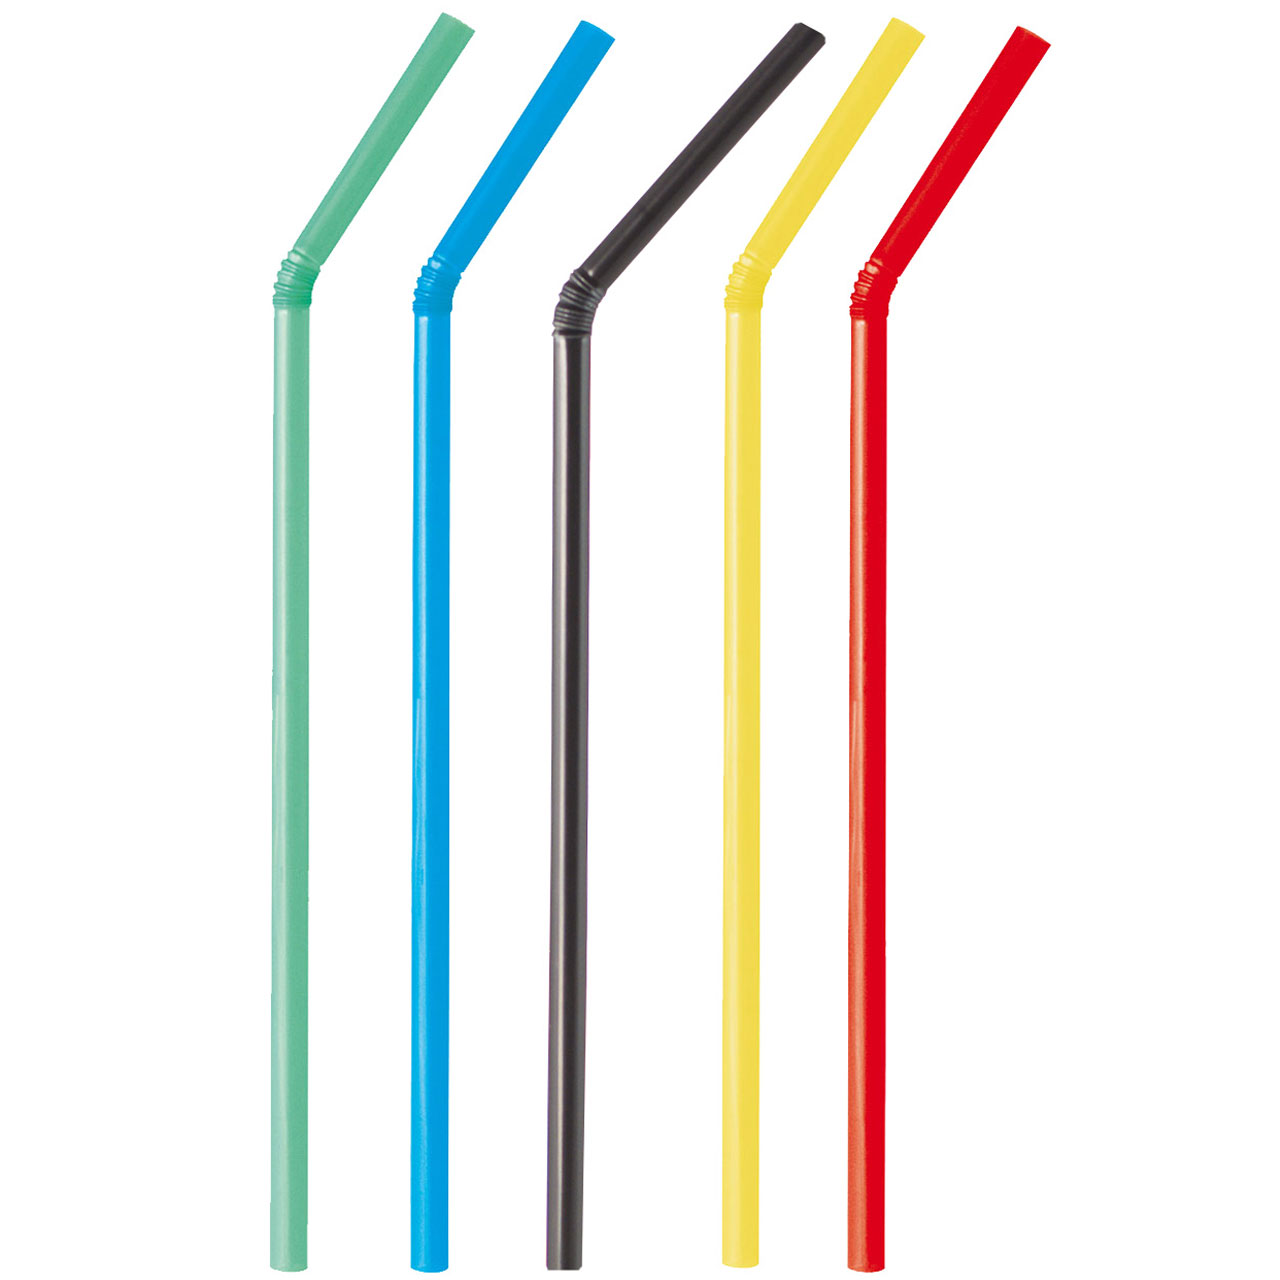 Trinkhalme Flex Strohhalme knickbar bunt gemischt farblich sortiert 240x5mm 